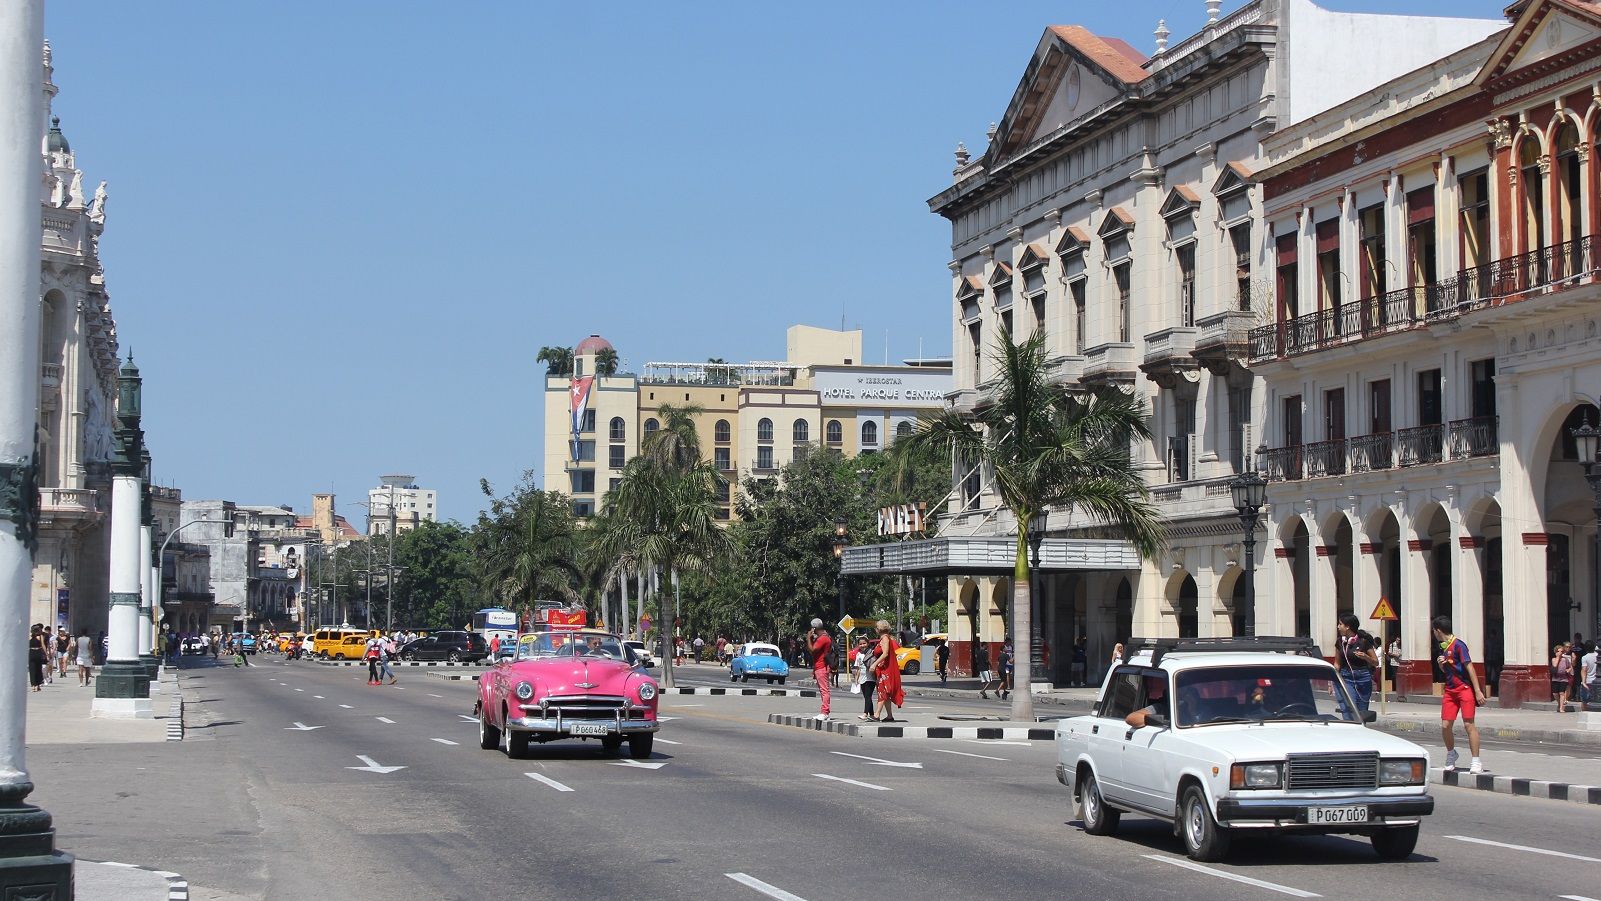 キューバ､経済自由化に進む社会主義国の実情 私有財産を許可､4月に憲法改正案公布へ | 中南米 | 東洋経済オンライン